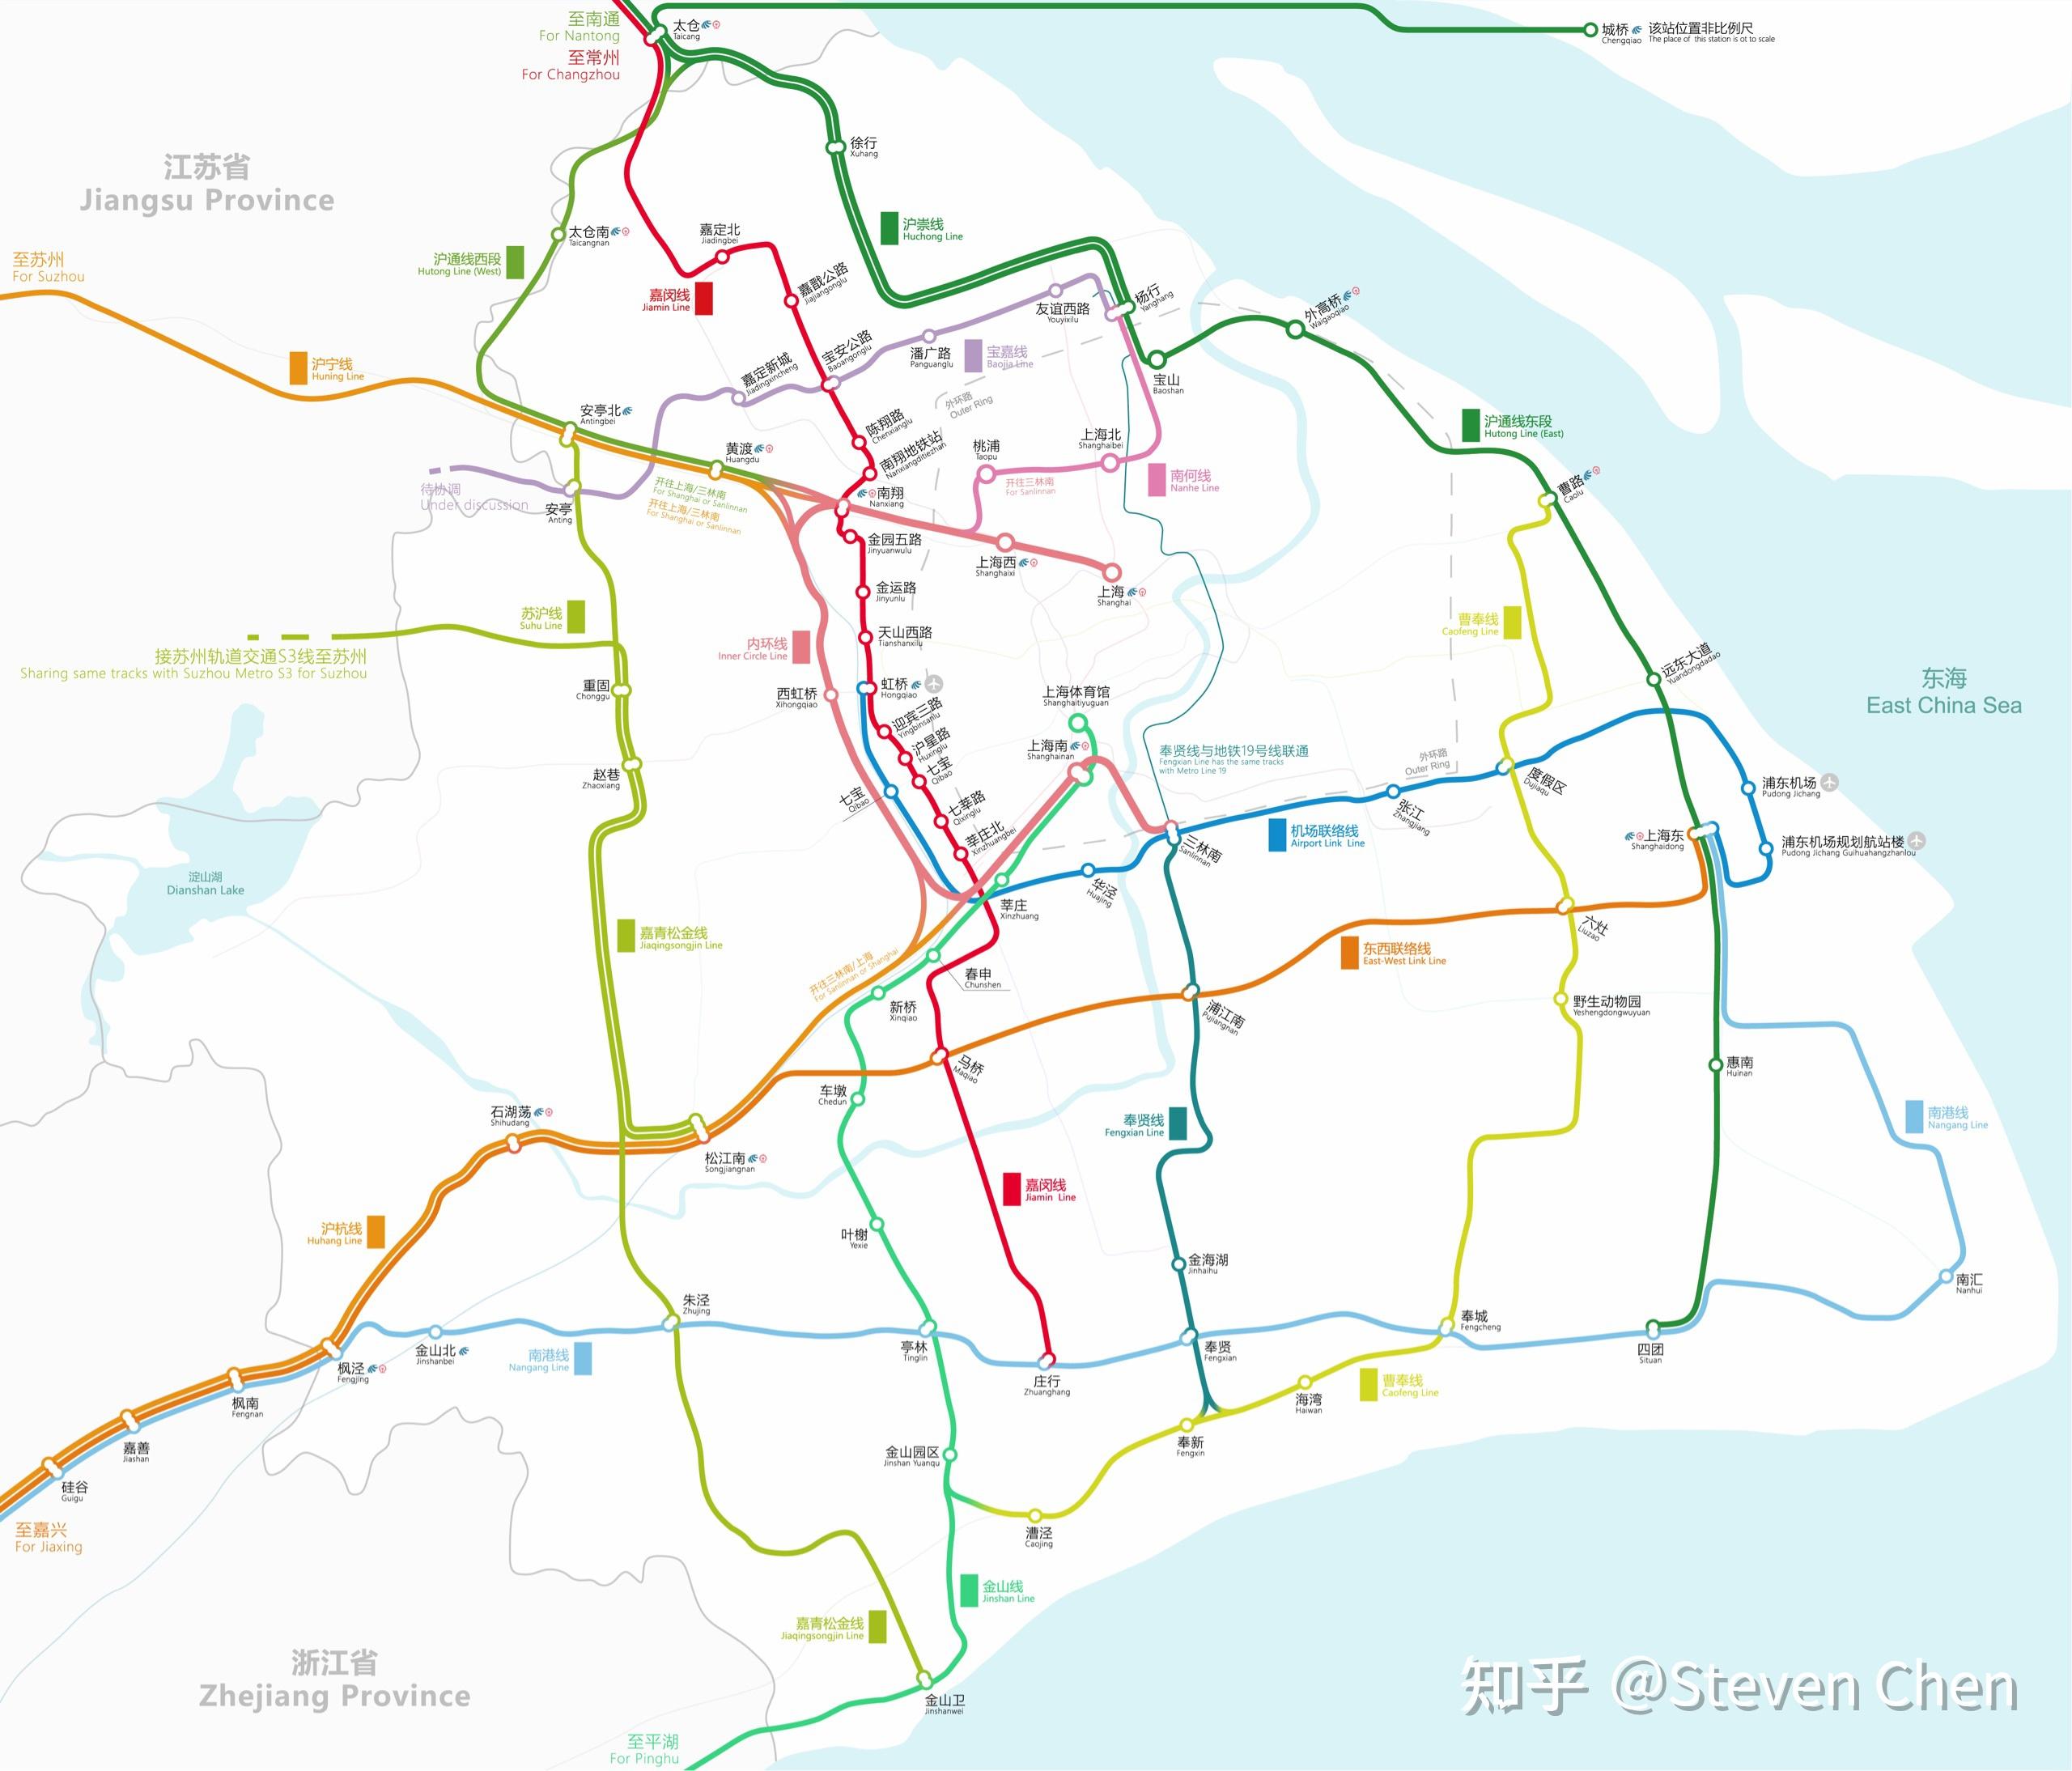 从2018-2023上海地铁规划可以看到,19号线将南北穿越杨行中部,并设立